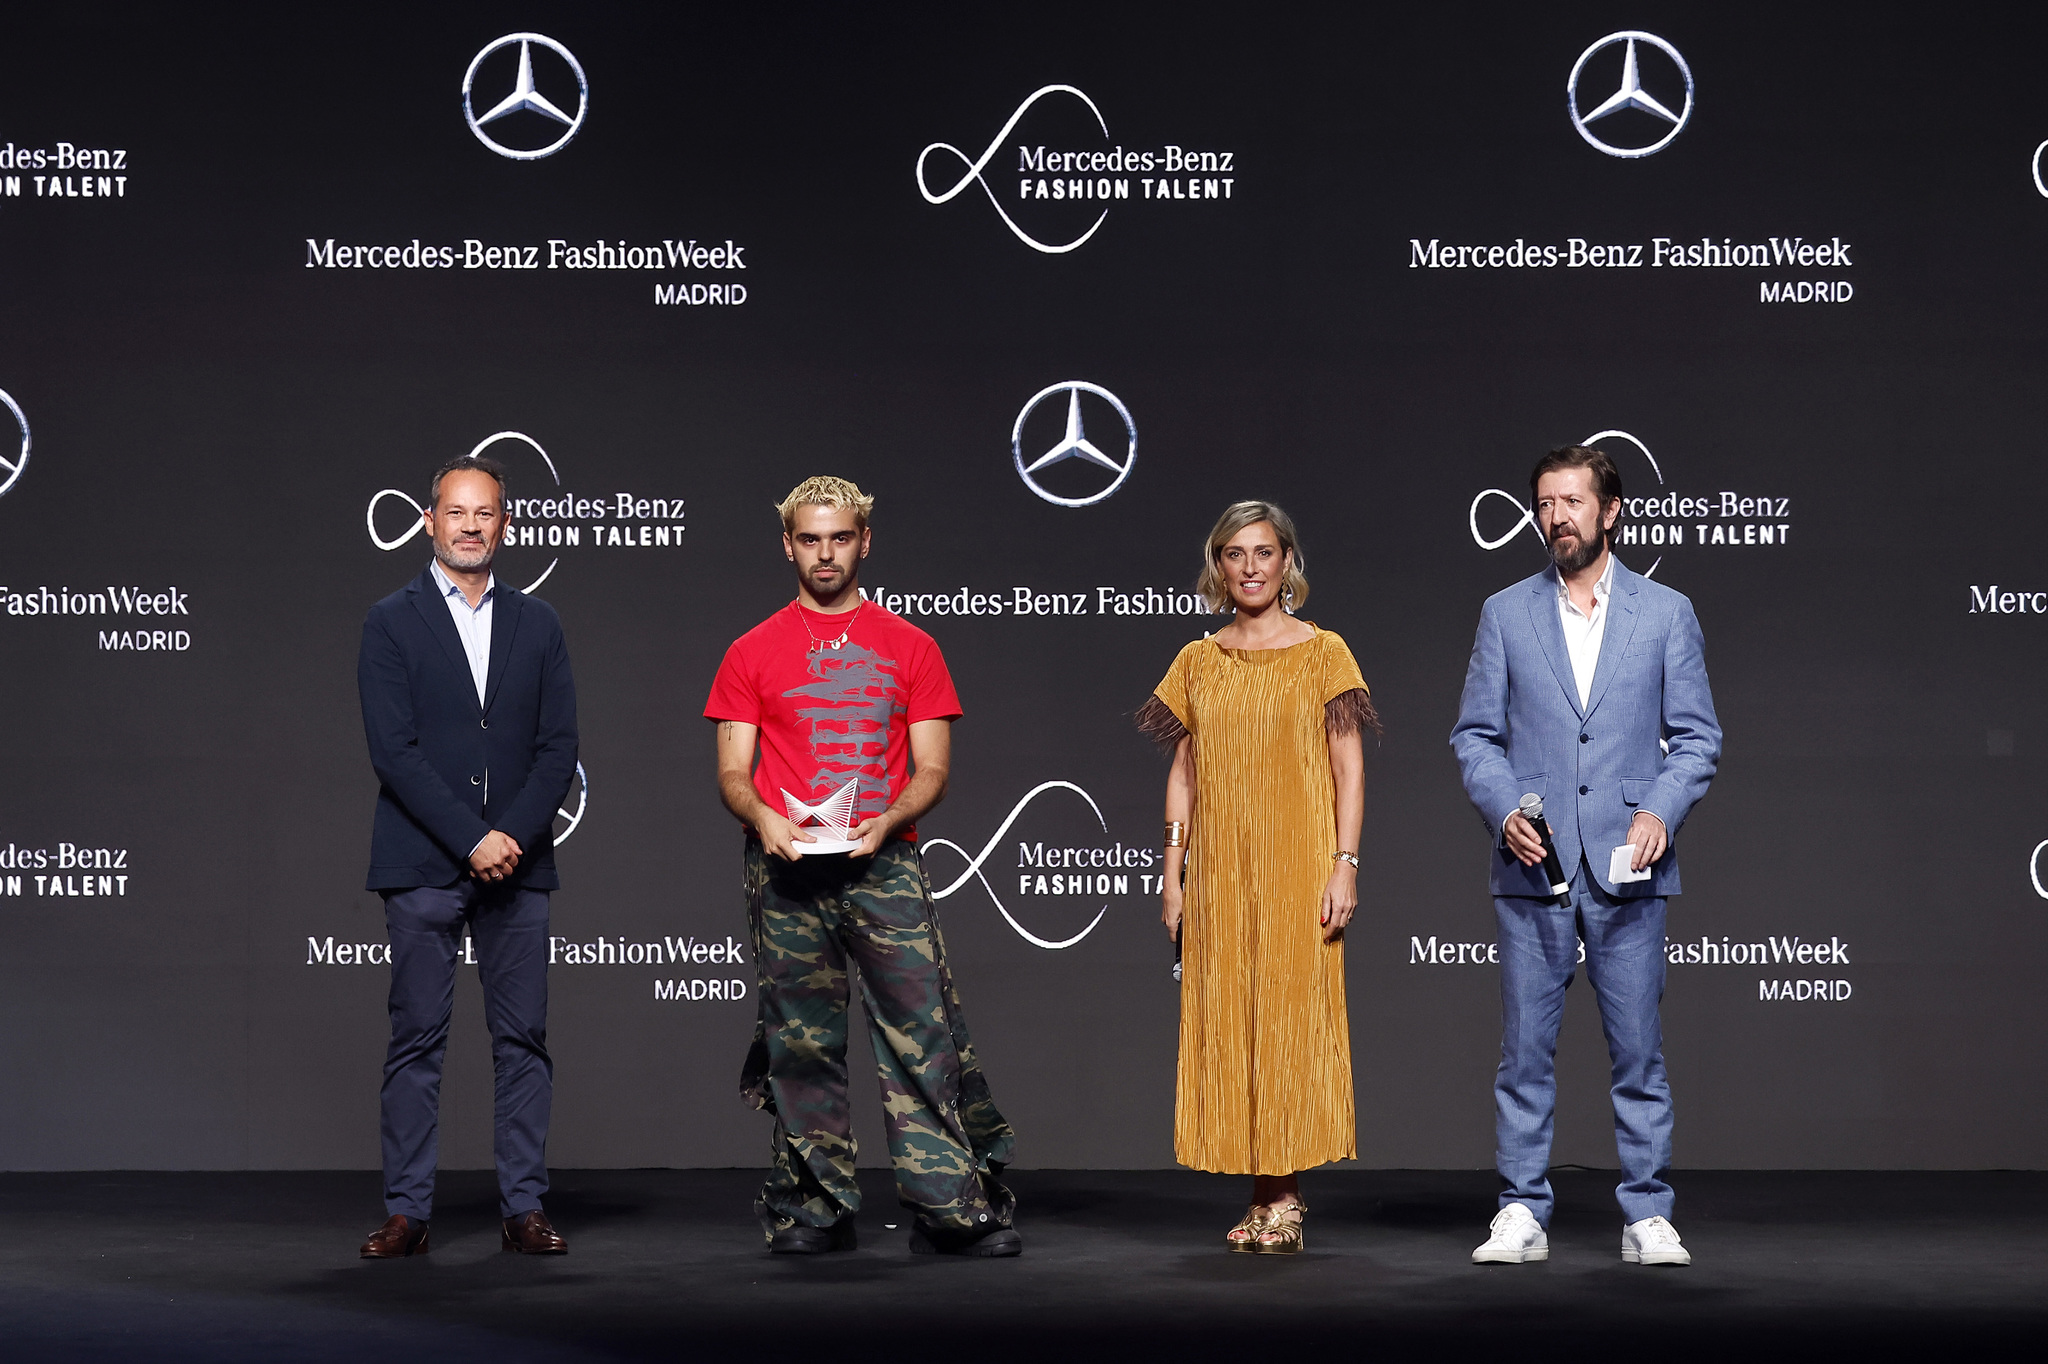 Entrega del premio Mercedes-Benz Fashion Talent a Emeerree